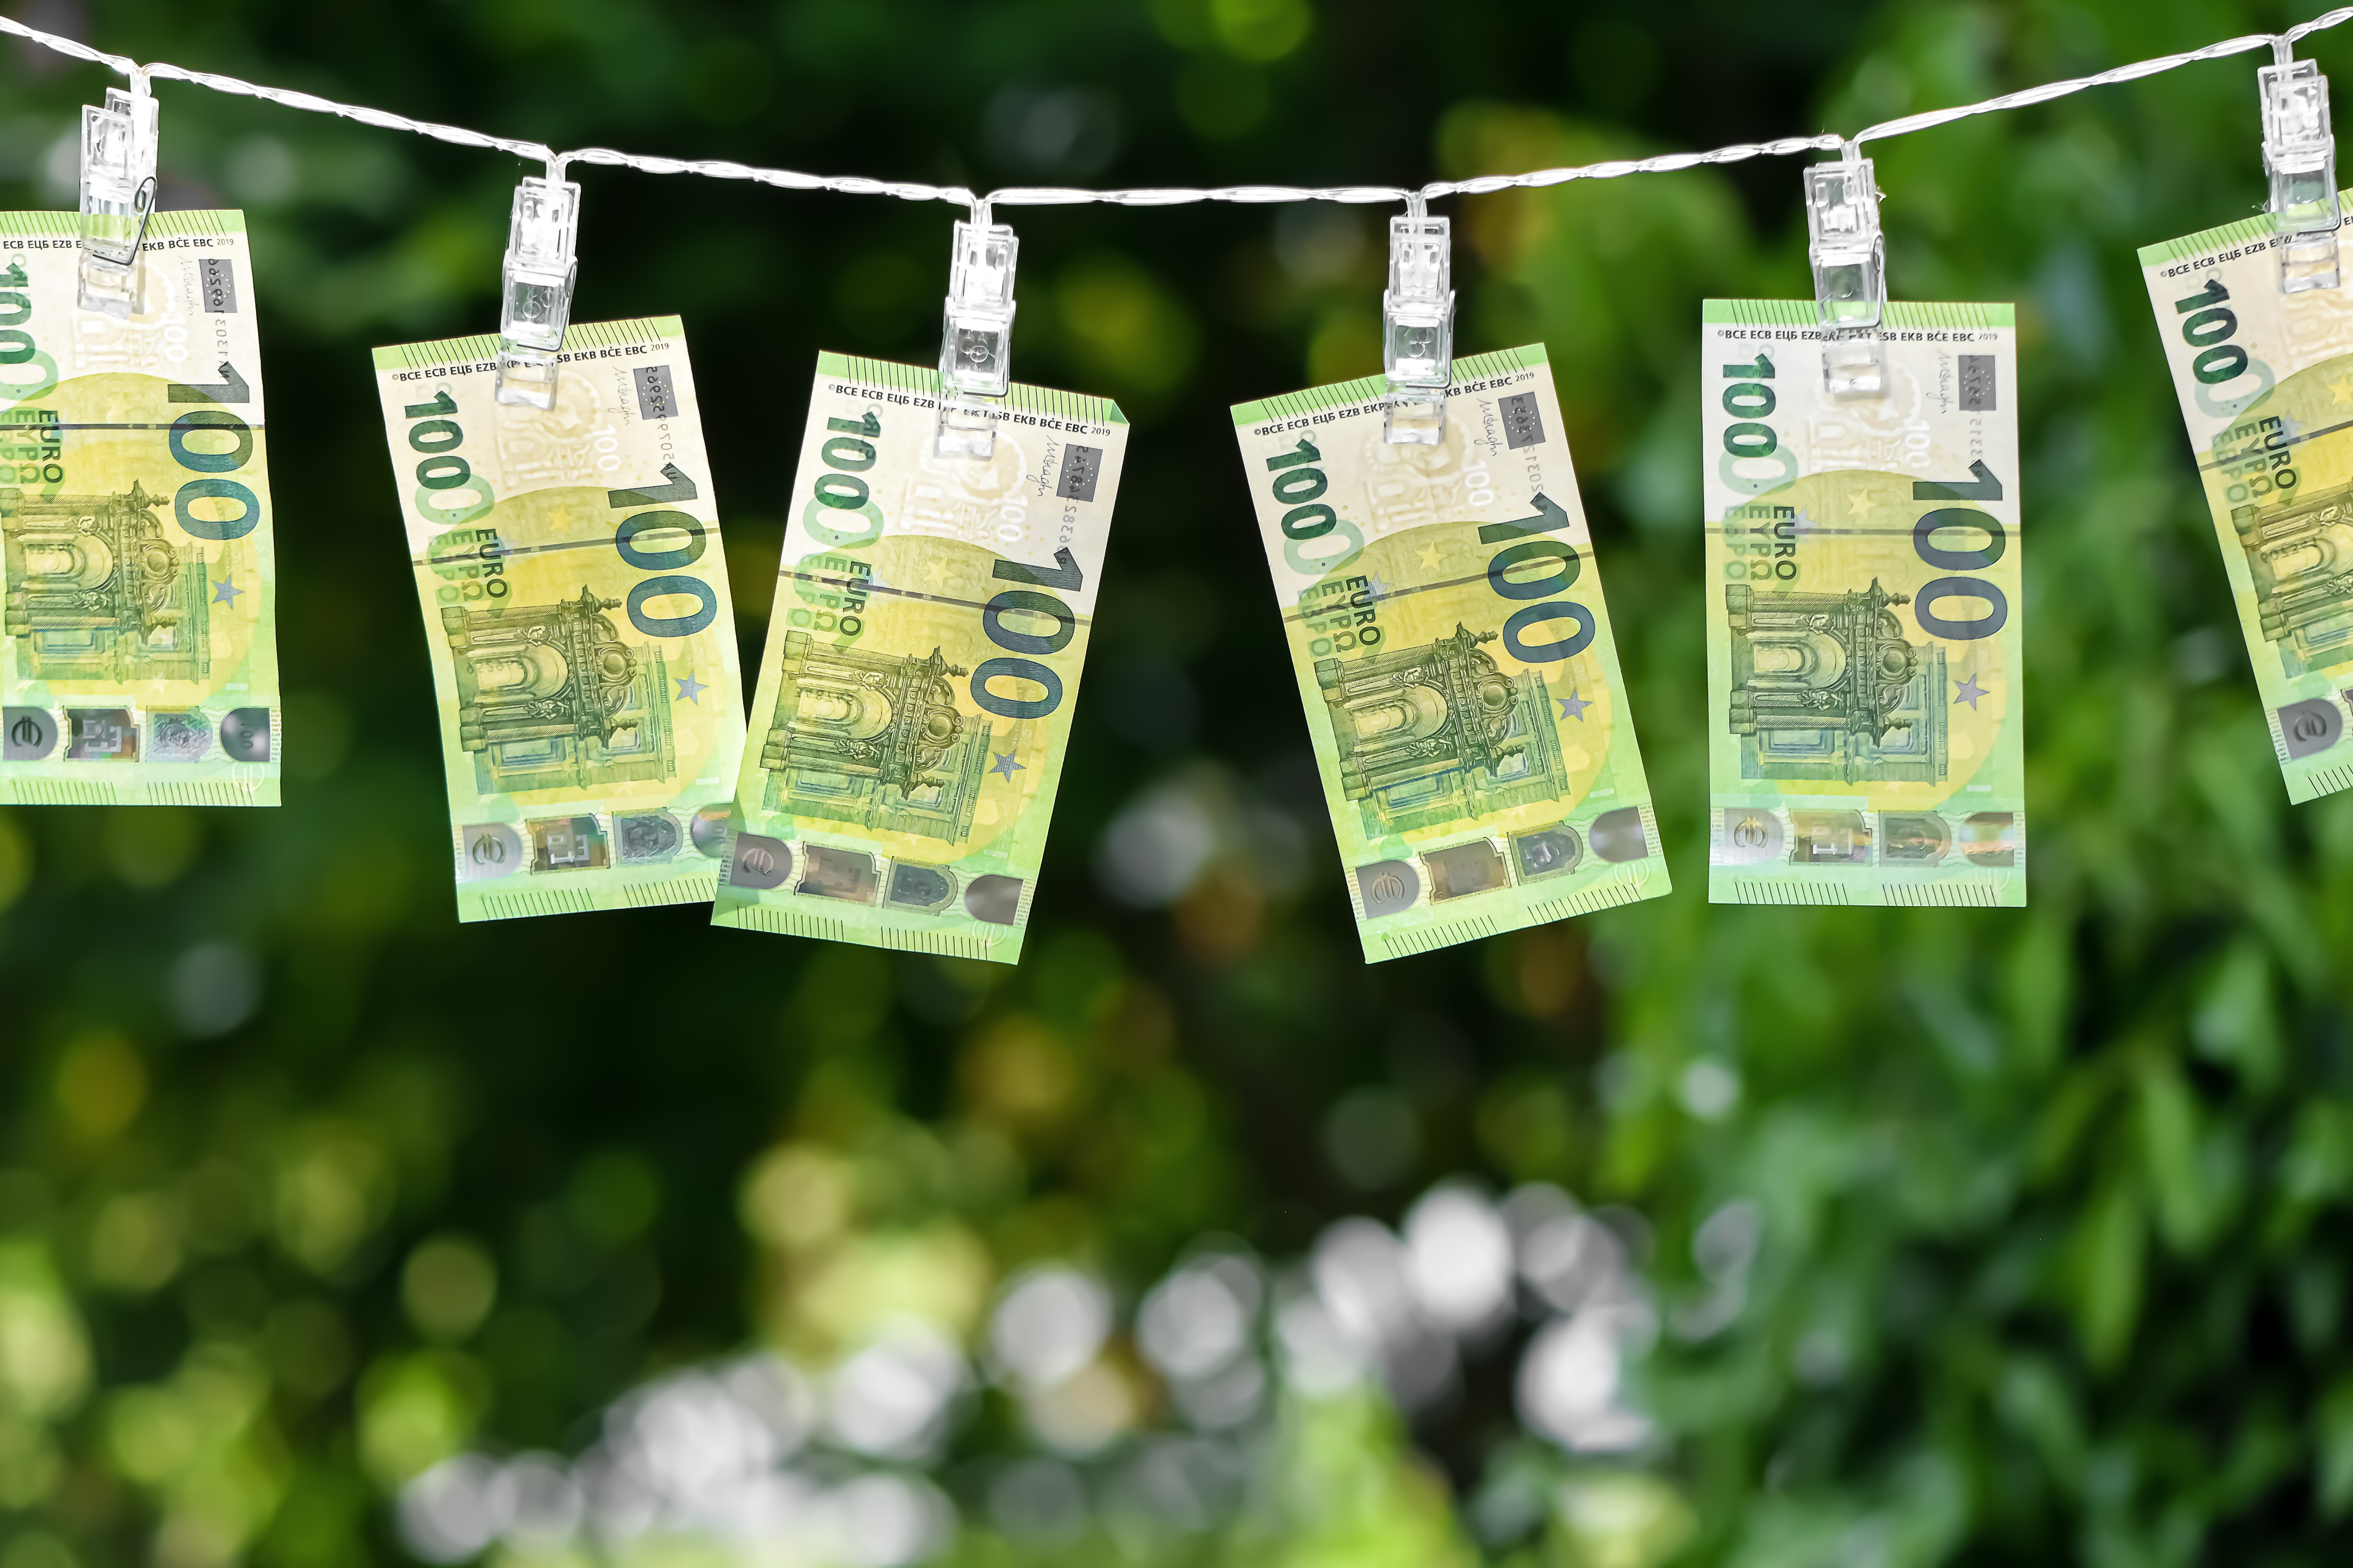 Transparencia Internacional asegura que en las campañas electorales de Latinoamérica se lava dinero. (Foto Prensa Libre: Alexas_Fotos/ Pixabay)	